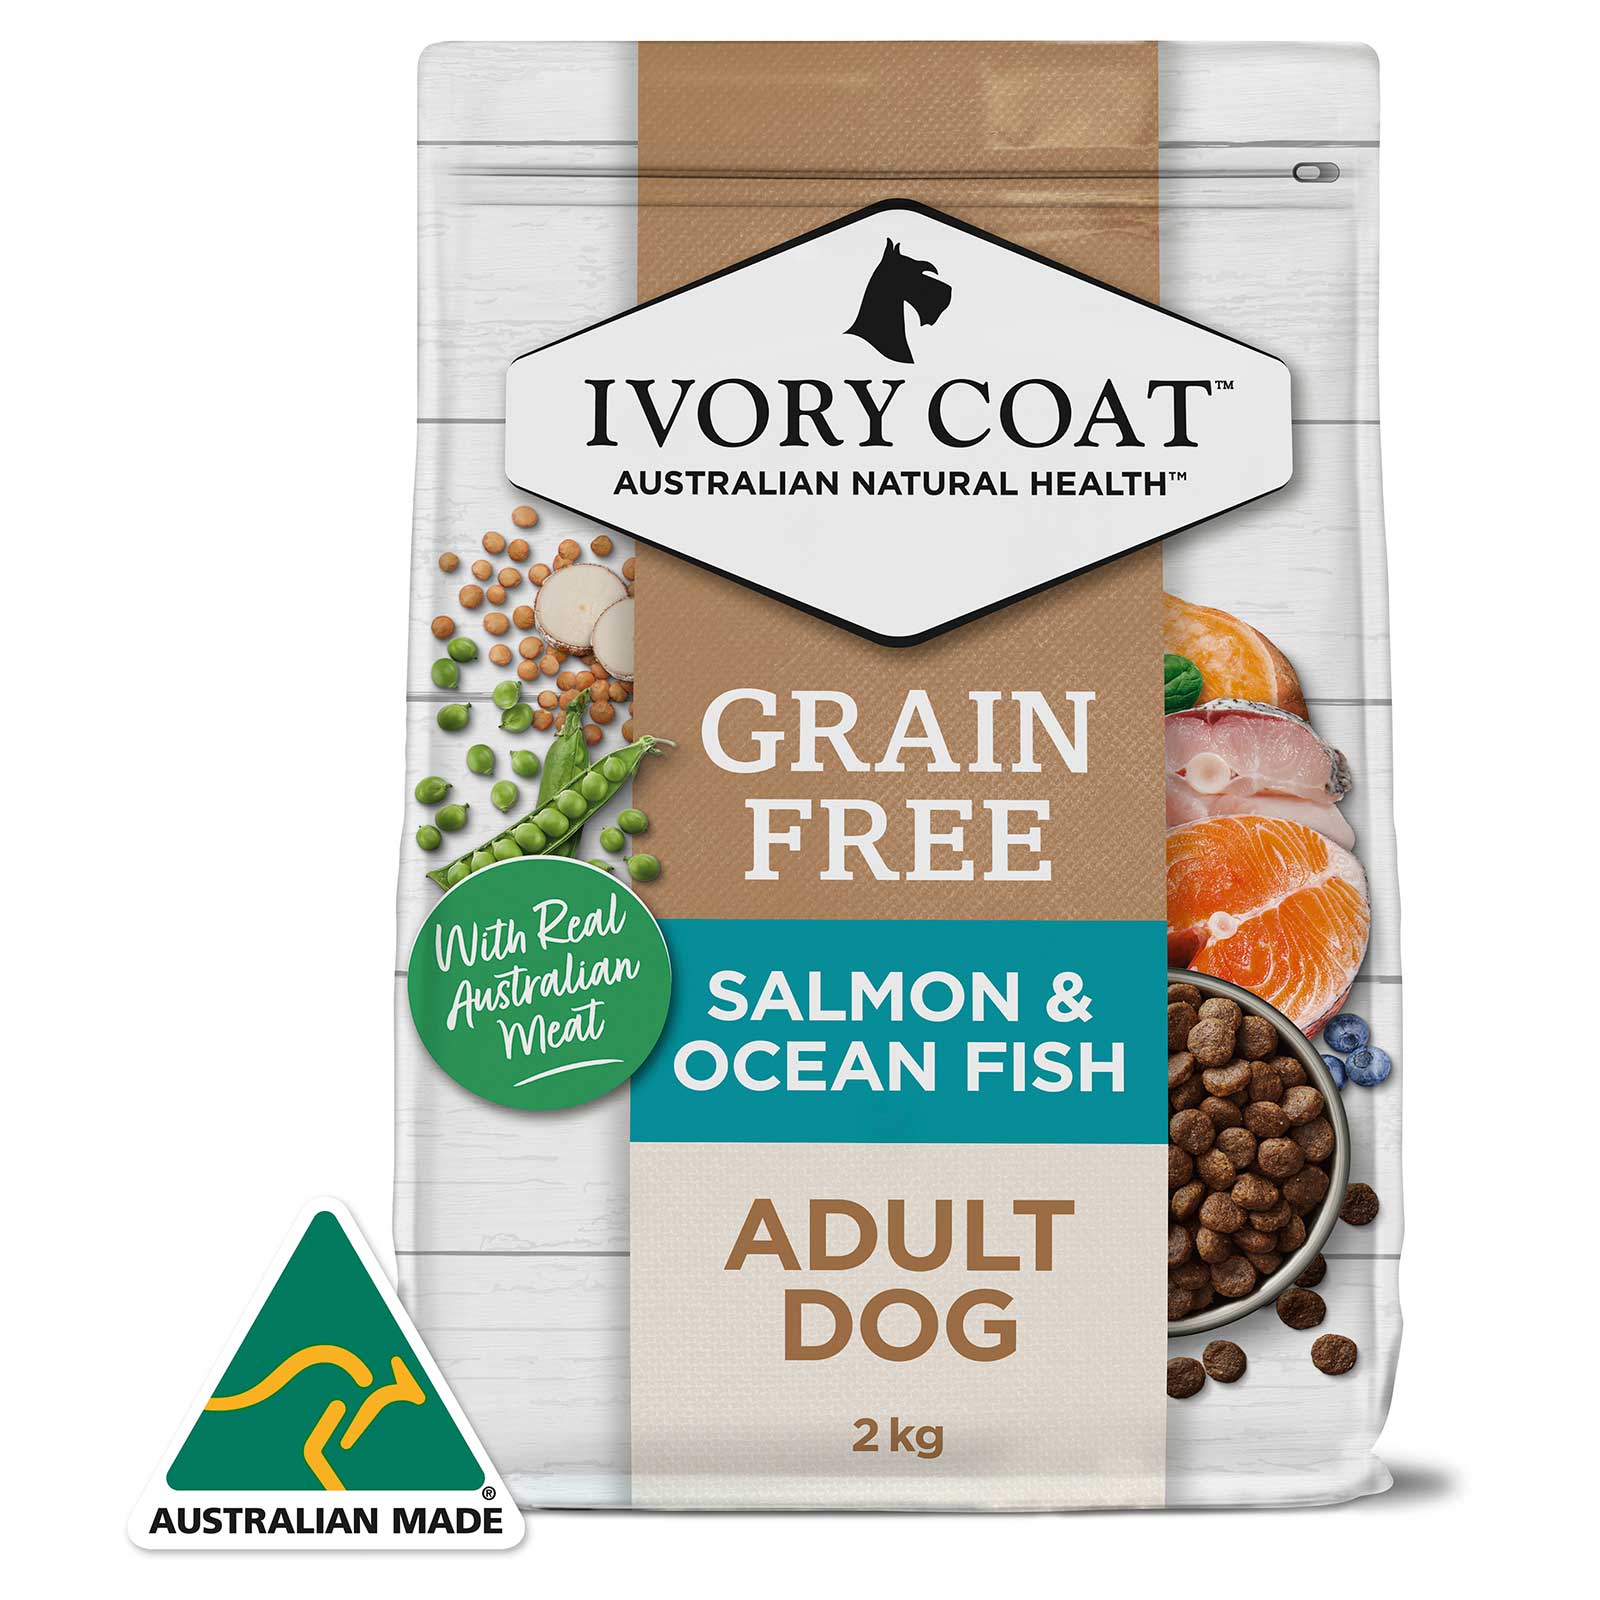 Ivory Coat Grain Free Dog Food Adult Salmon & Ocean Fish